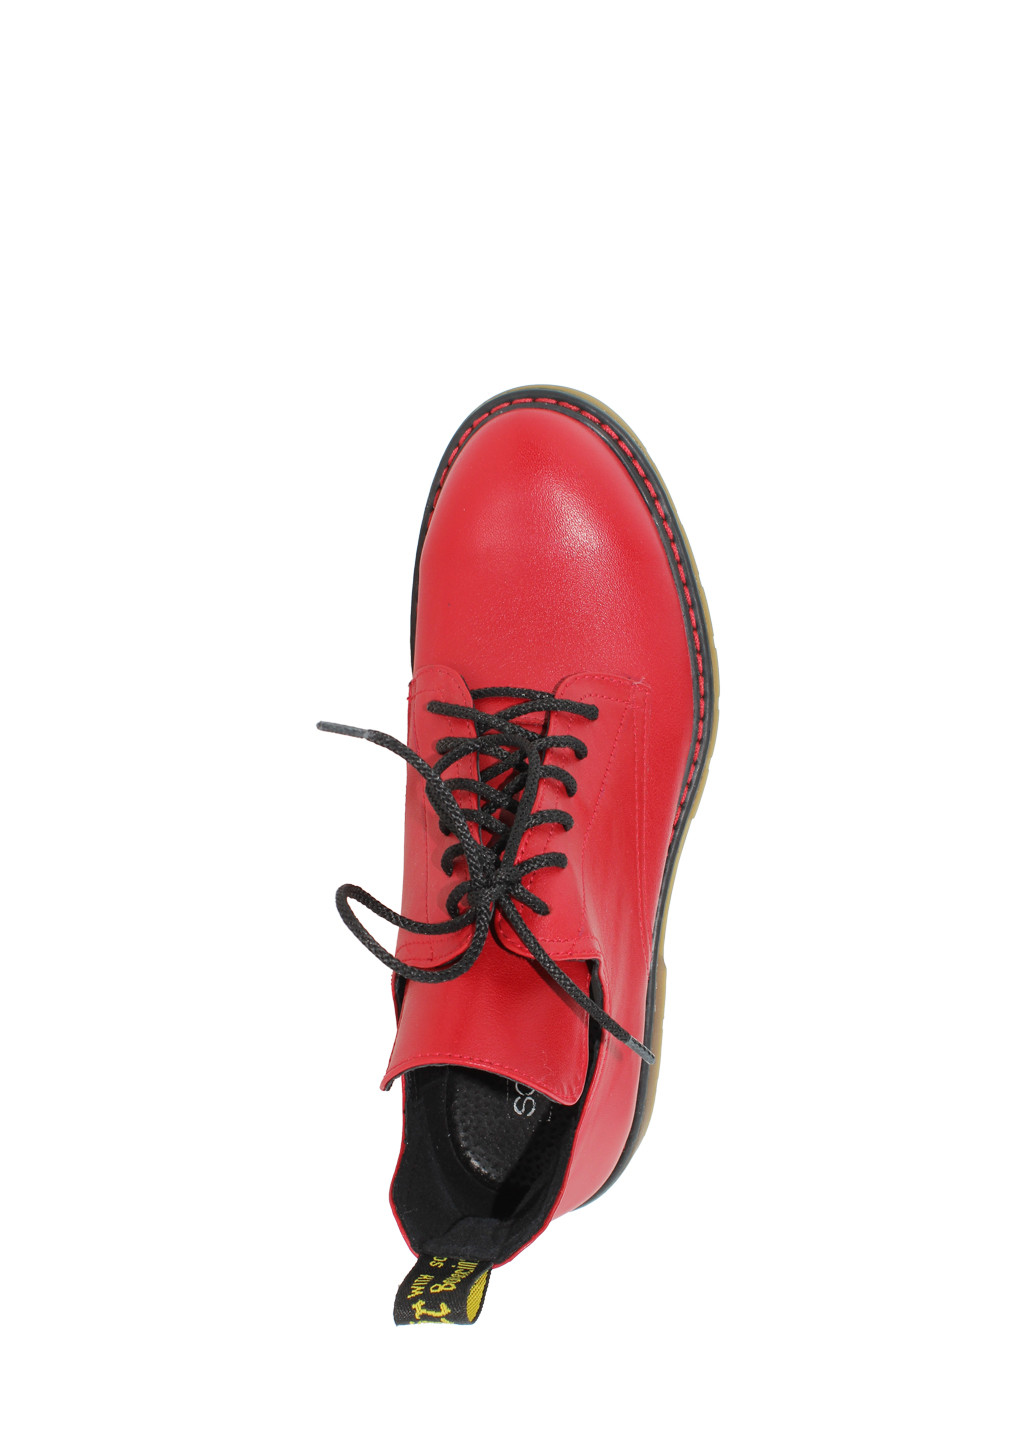 Осенние ботинки rsм-373 красный Sothby's